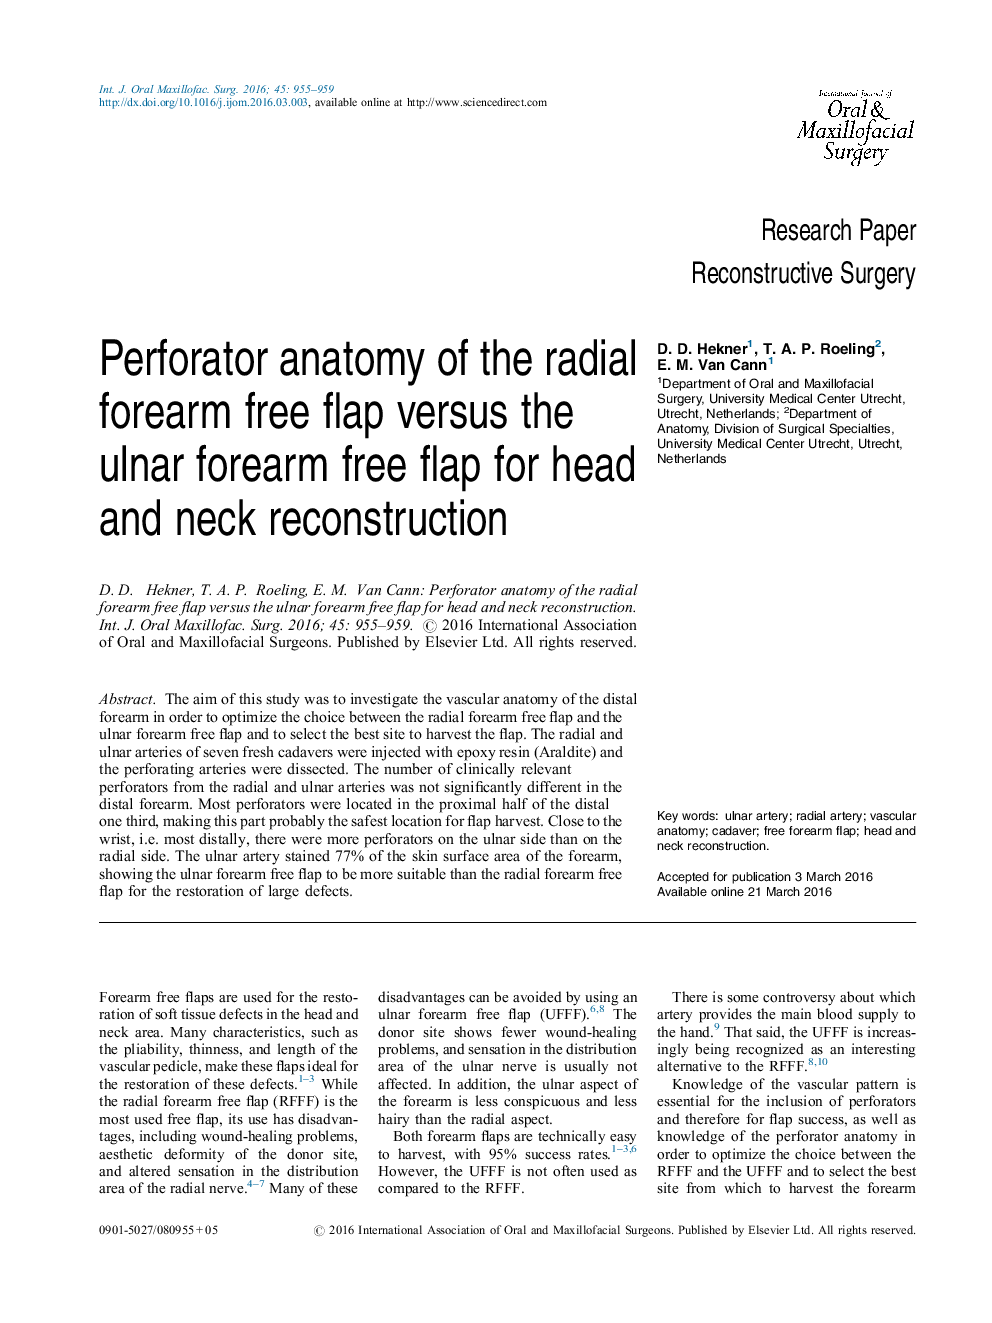 آناتومی پرفوراتور فلاپ آزاد فک شعاعی در برابر فلپ سفتی ناحیه گردن اولنار برای بازسازی سر و گردن 